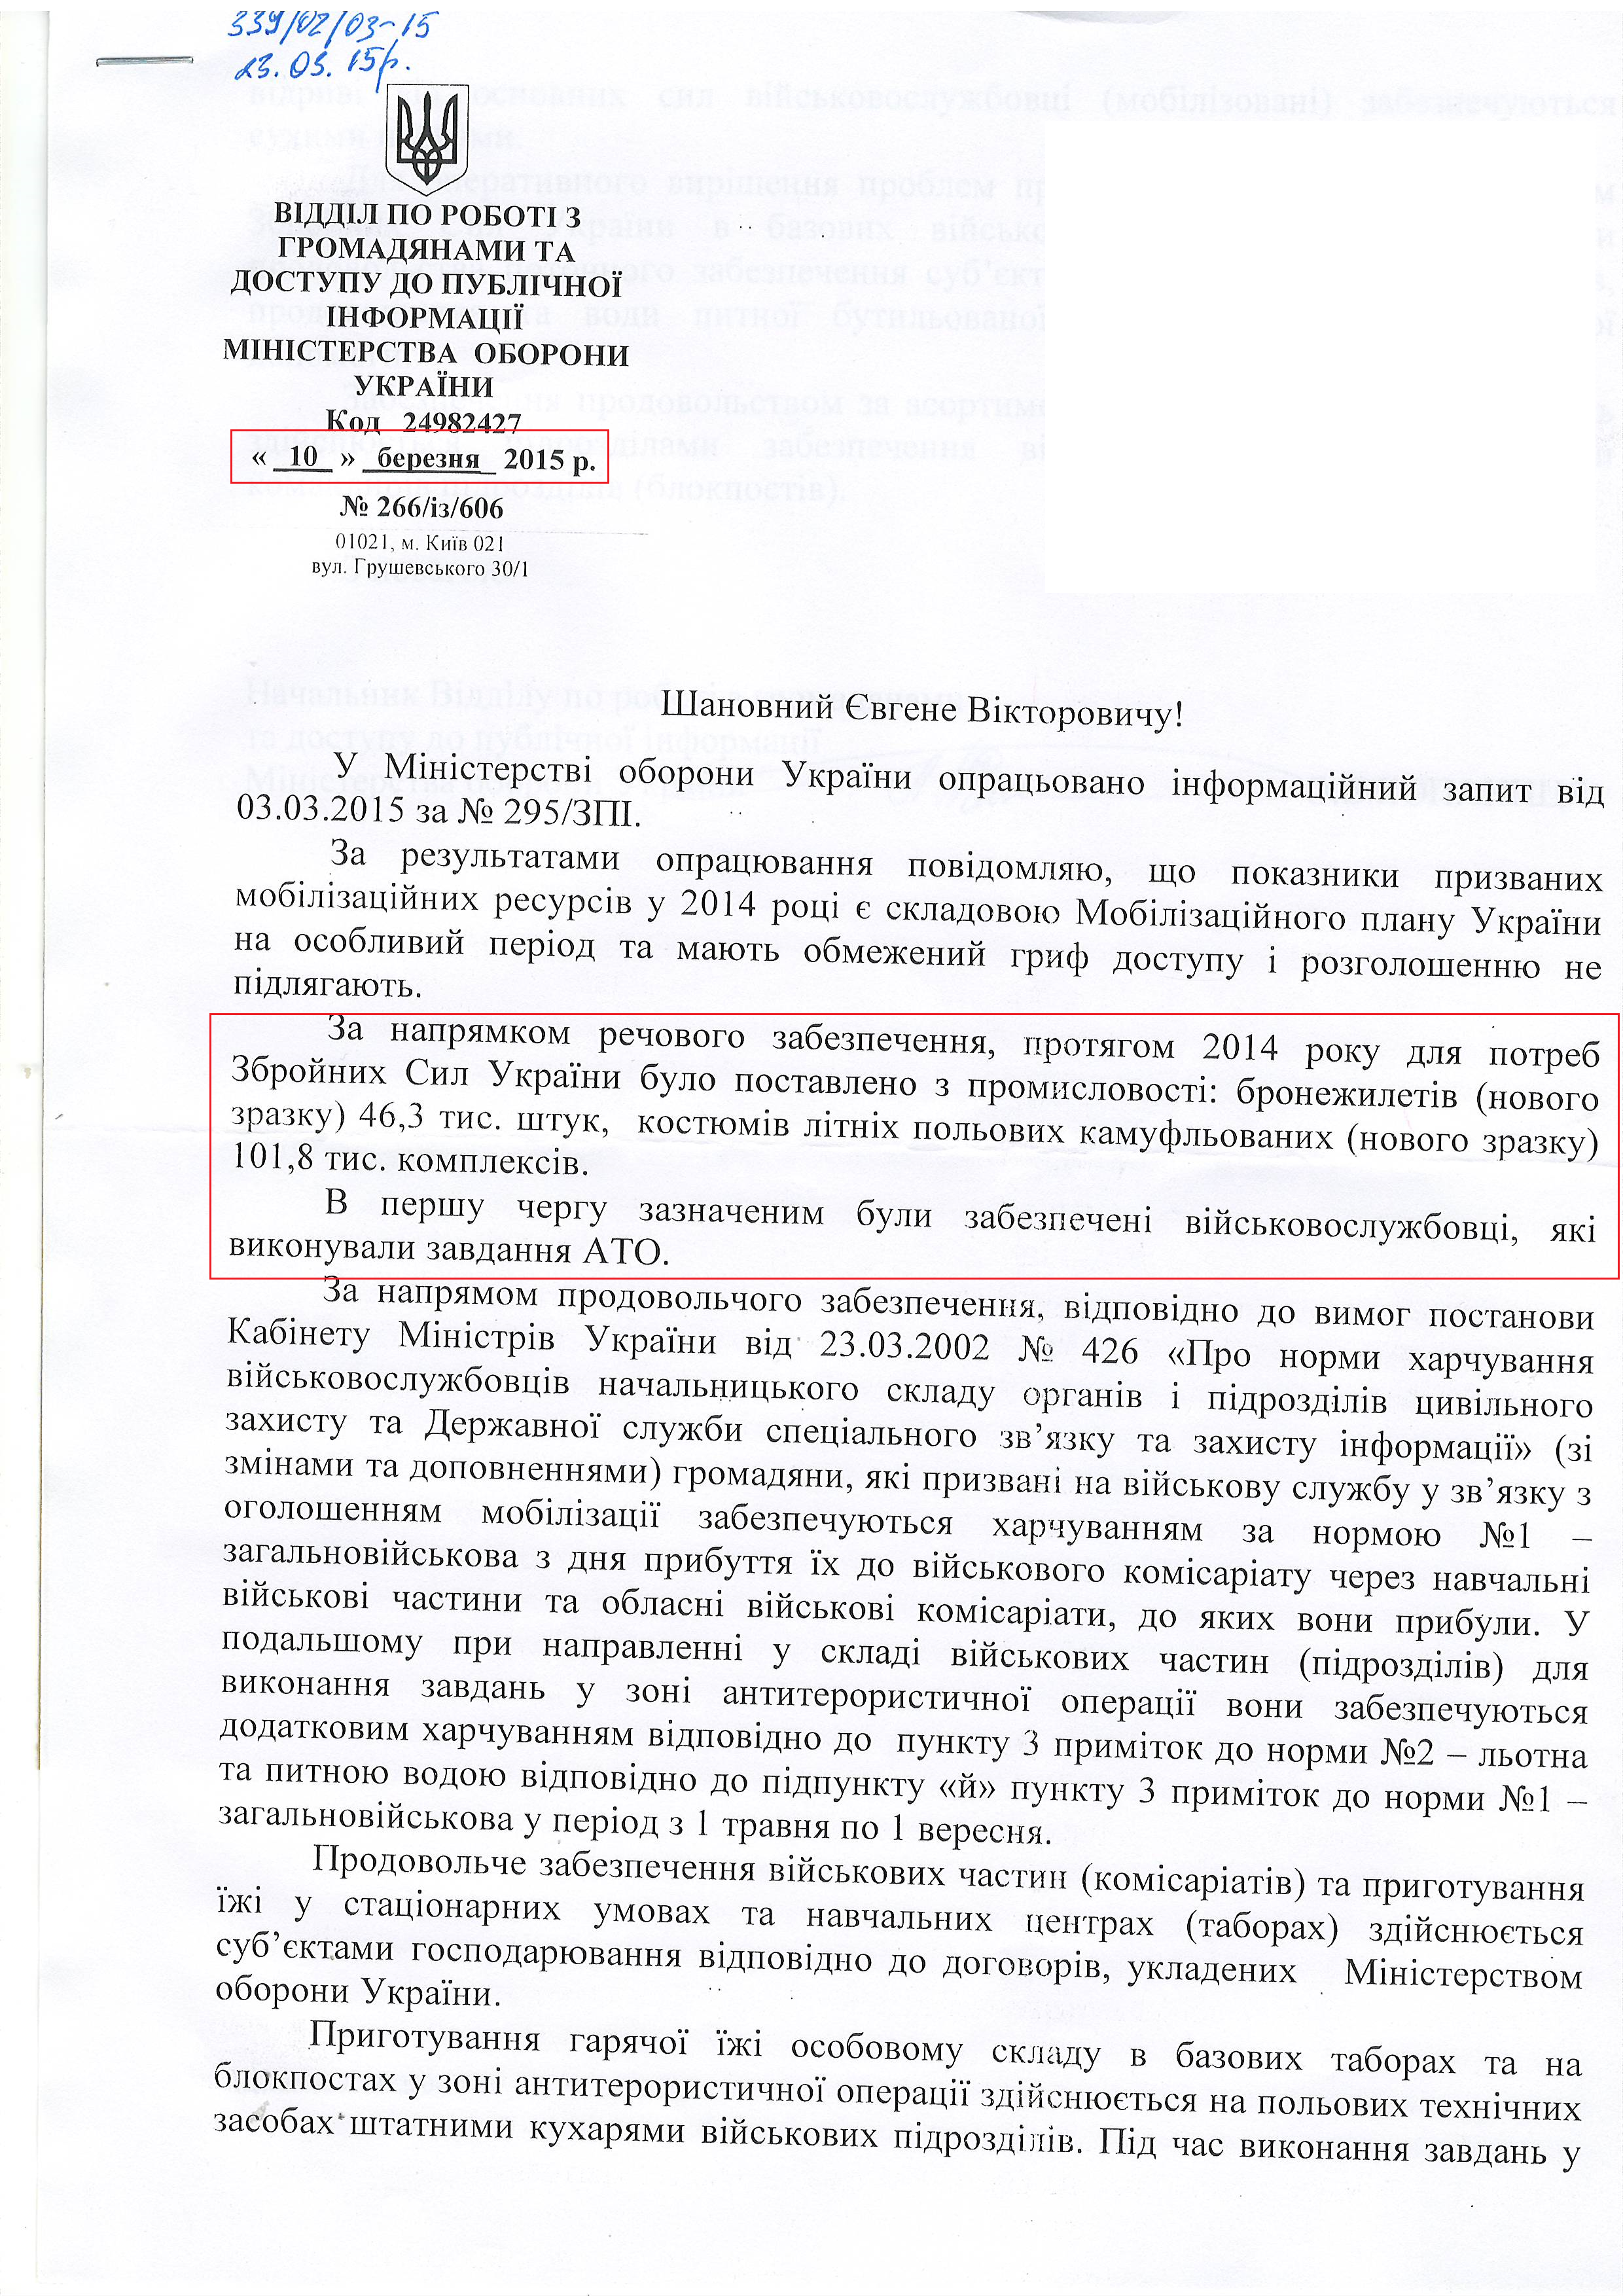 Лист міністерства оборони Україїни від 10 березня 2015 року 